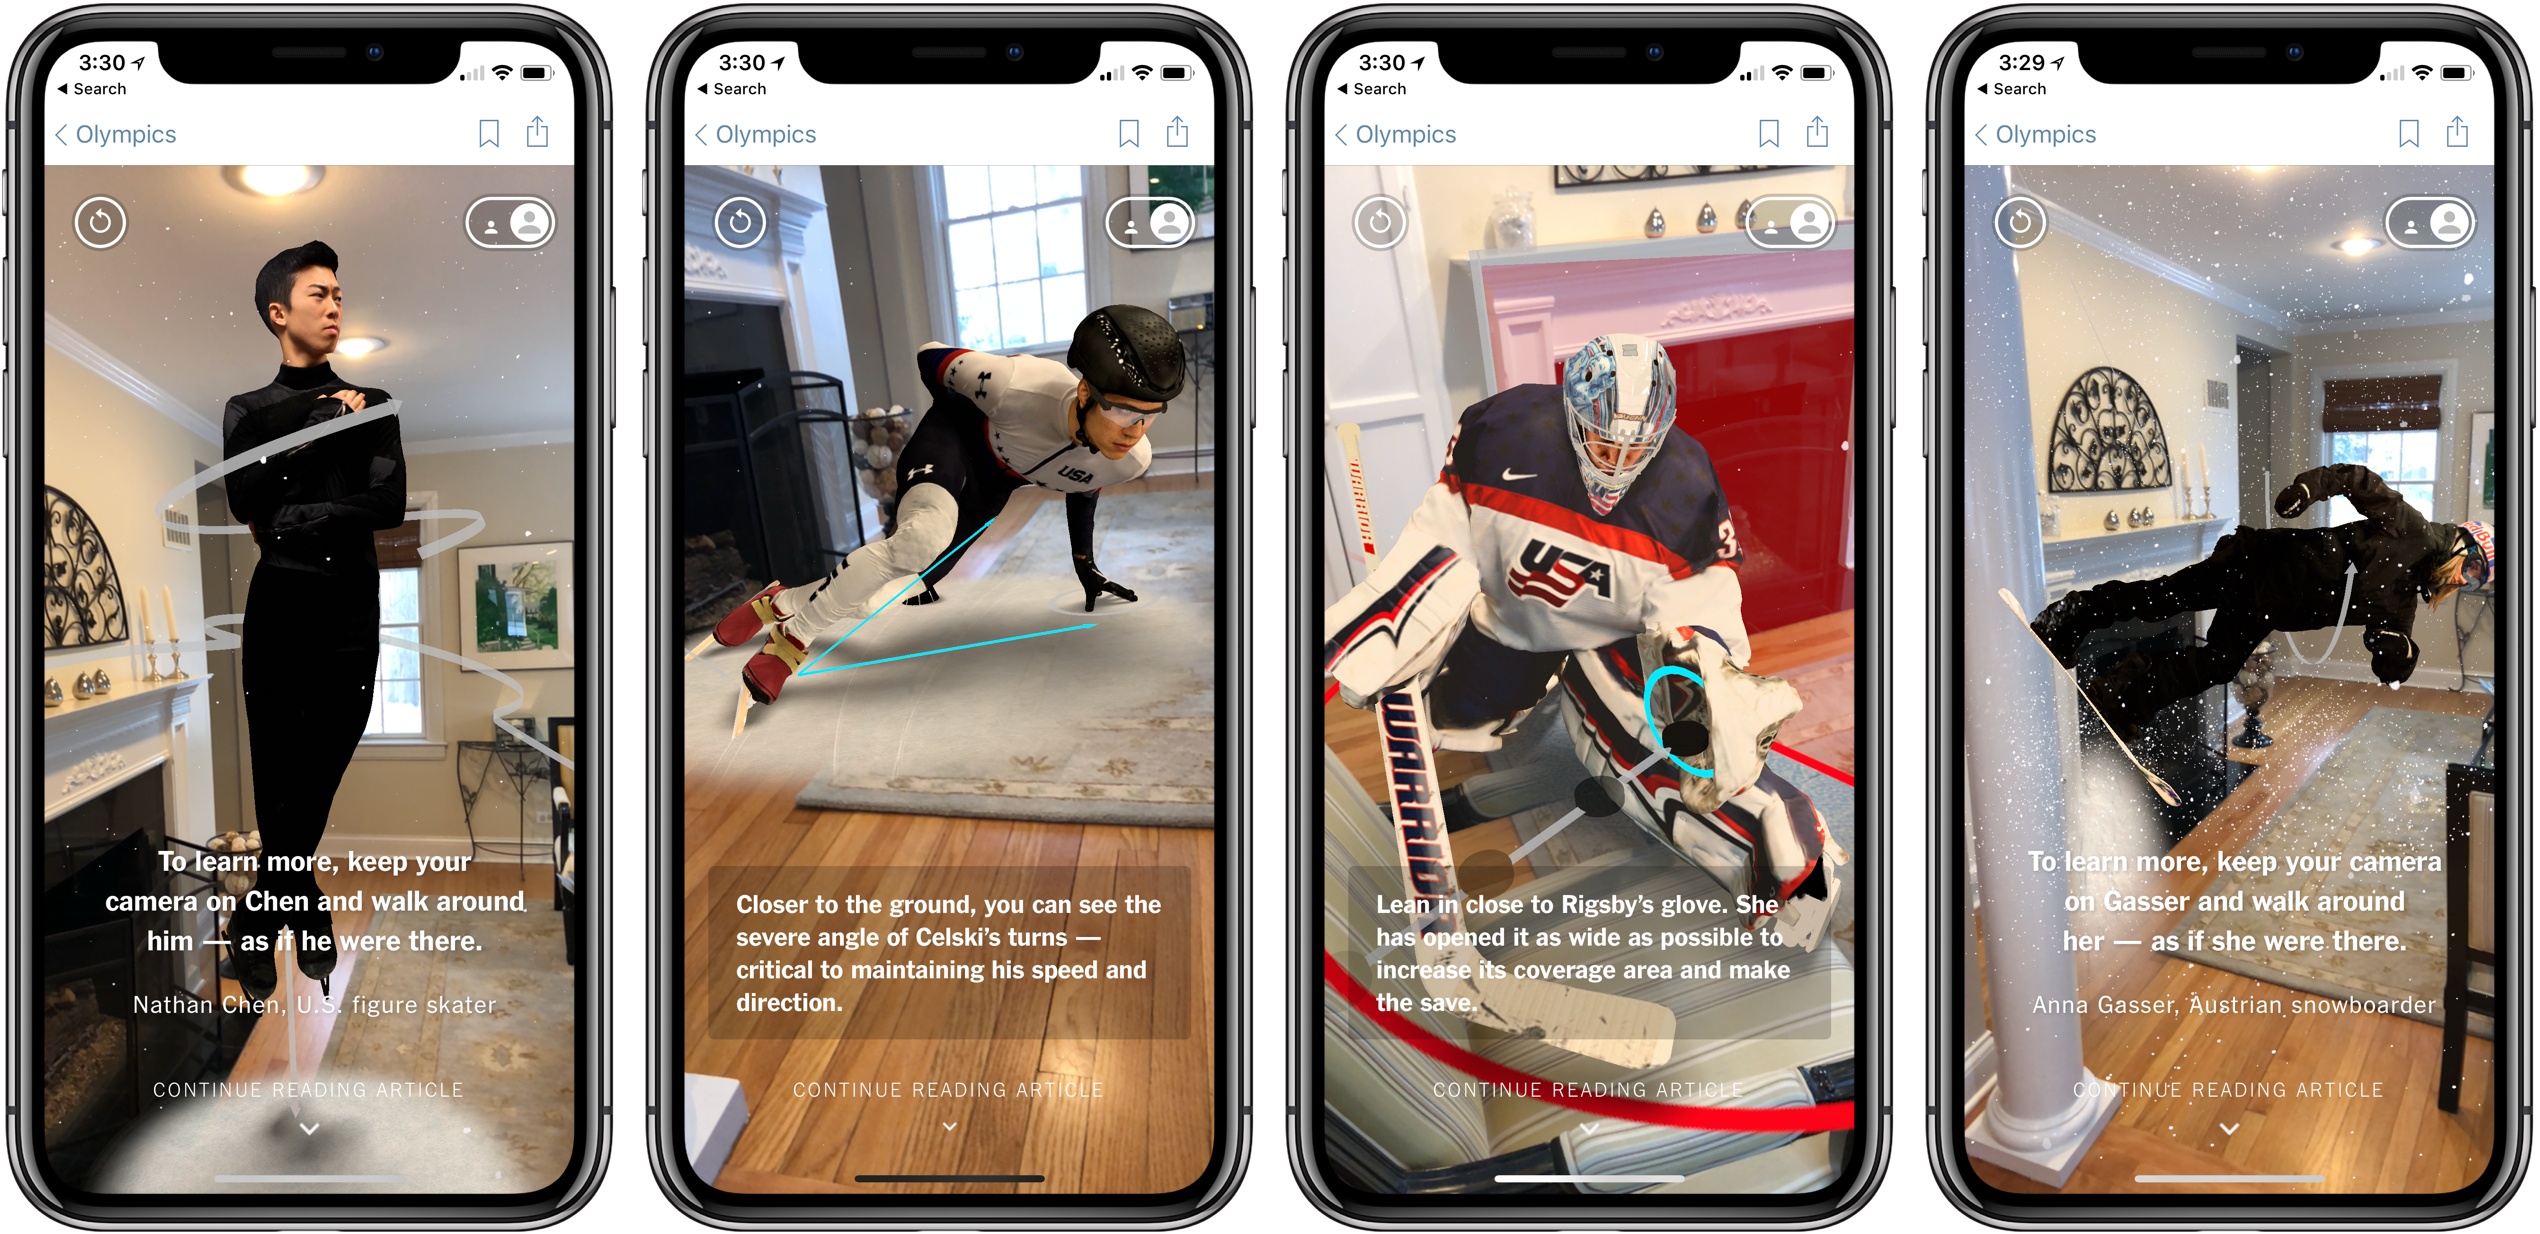 NY Times Tecnología Augmented Reality Olympics 